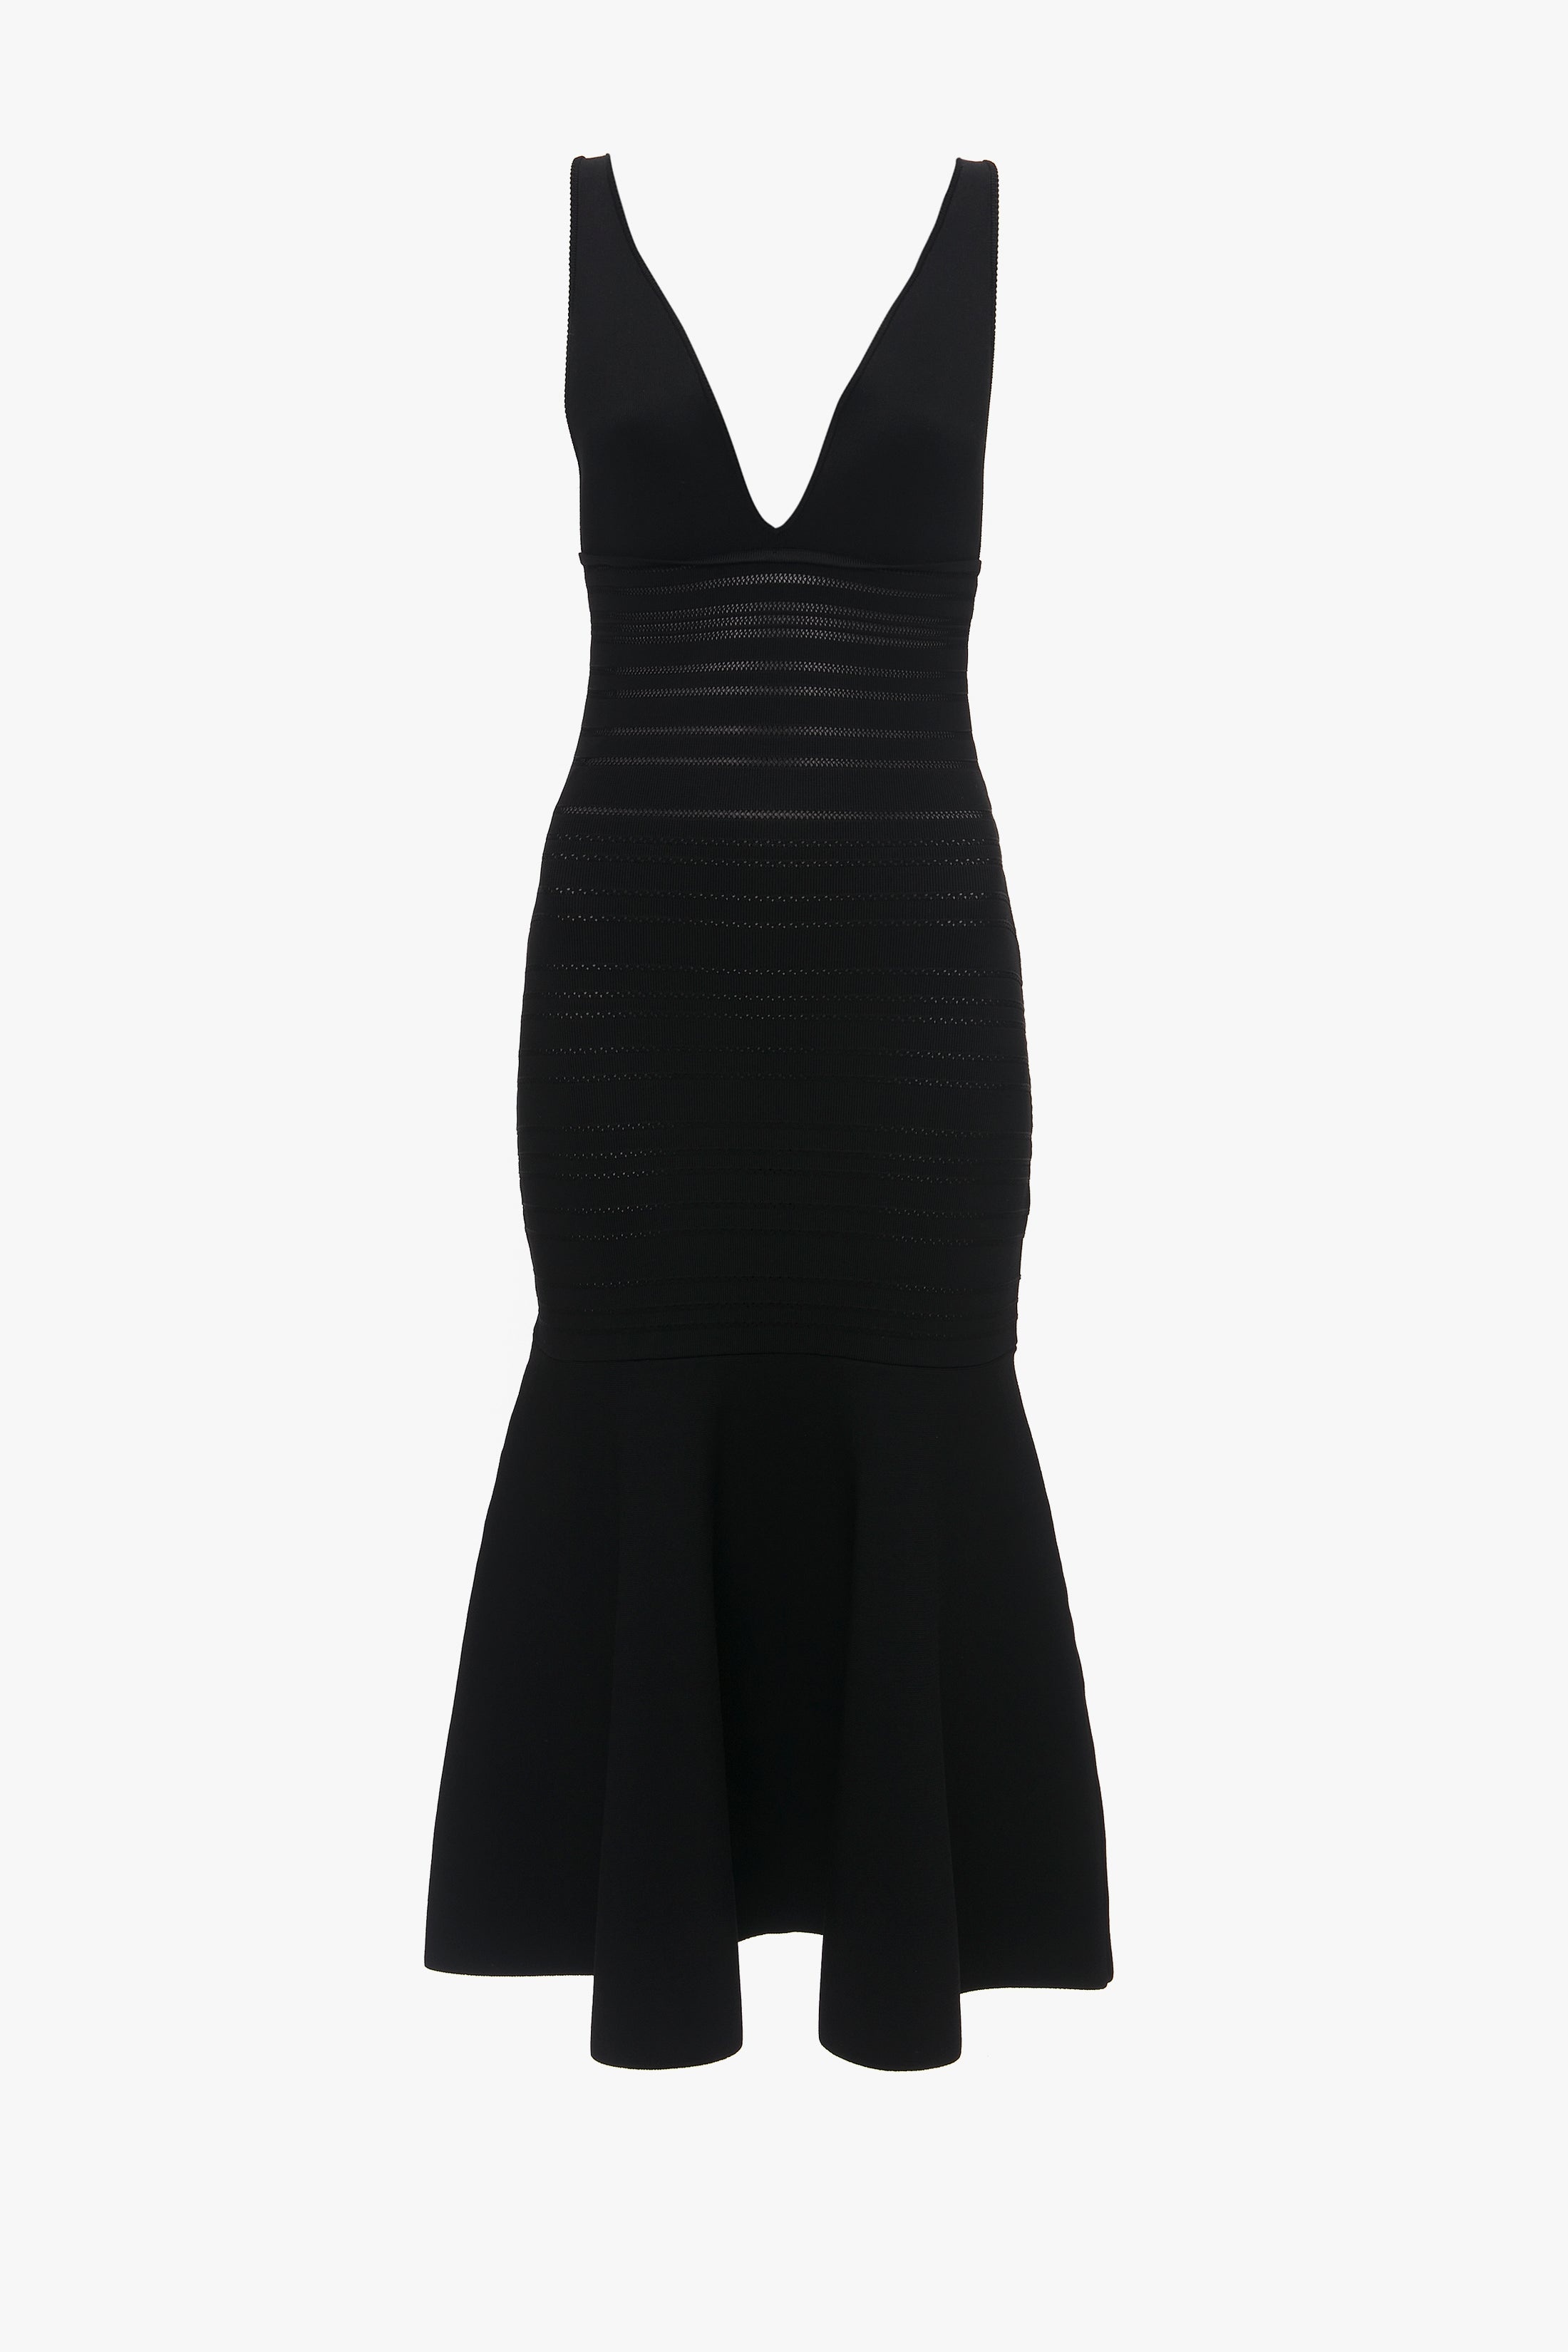 Frame Detail Sleeveless Dress In Black - 1